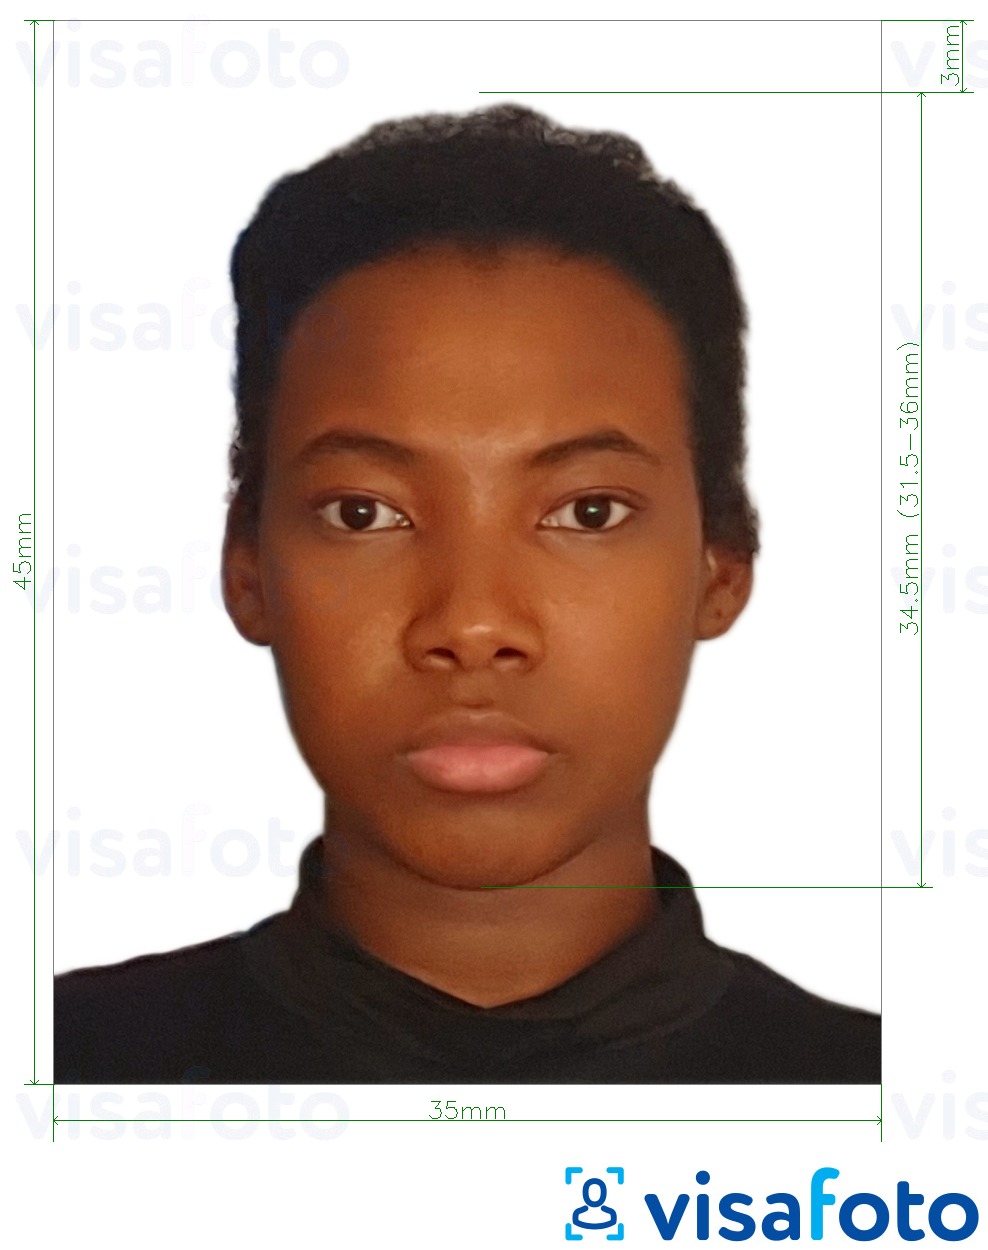 Contoh dari foto untuk Paspor Guyana 45x35 mm (1,77 x 1,38 inci) dengan ukuran spesifikasi yang tepat